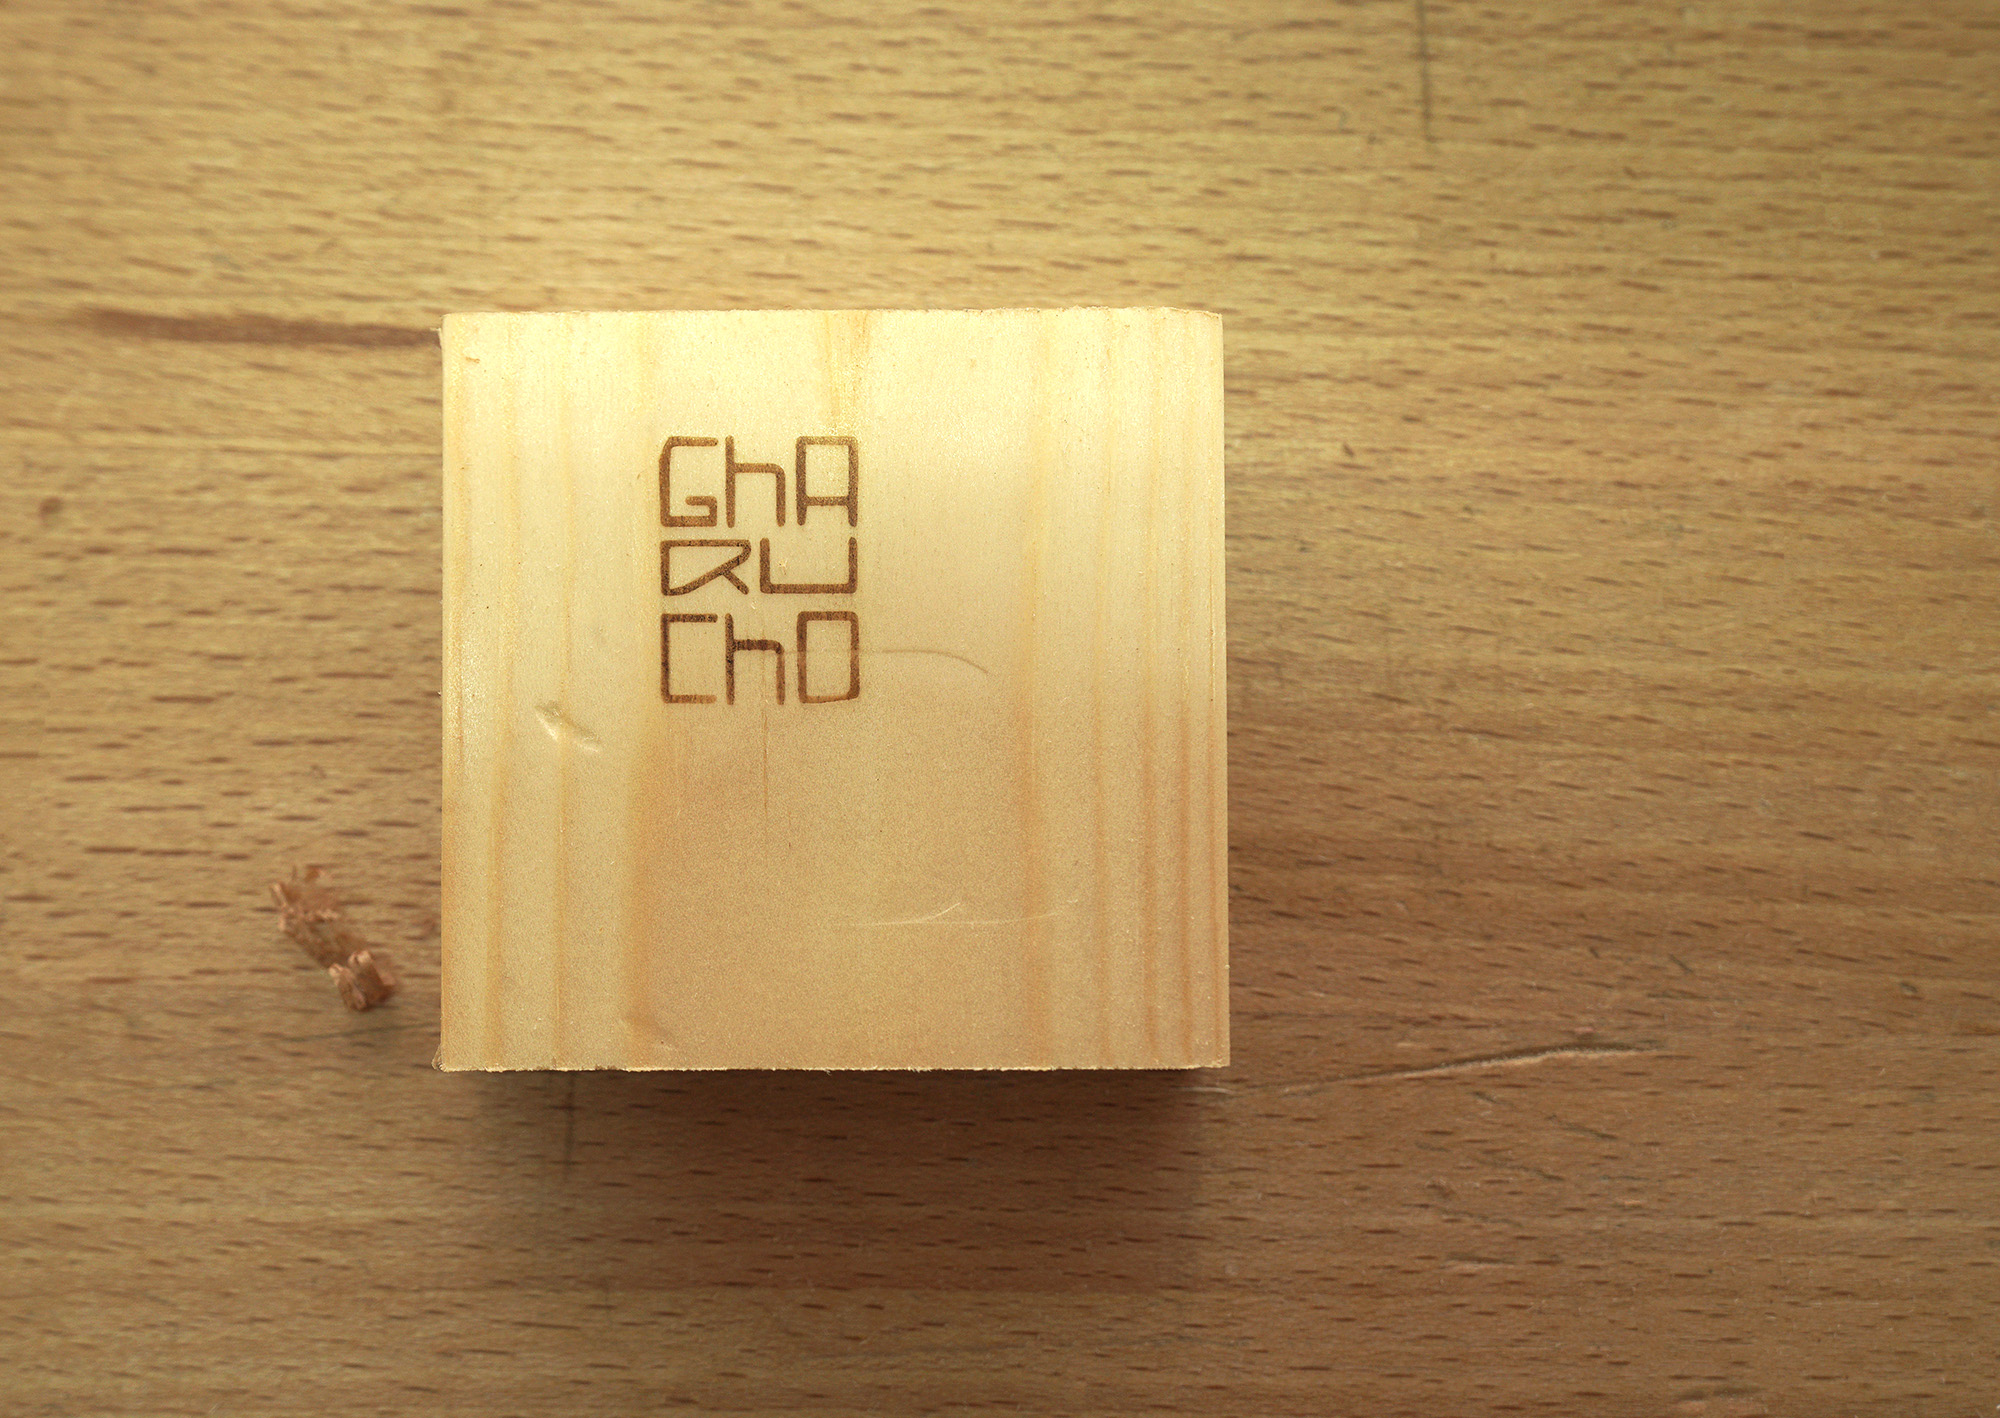 Logotipo del ebanista Gharucho Woodworks grabado con calor en madera.